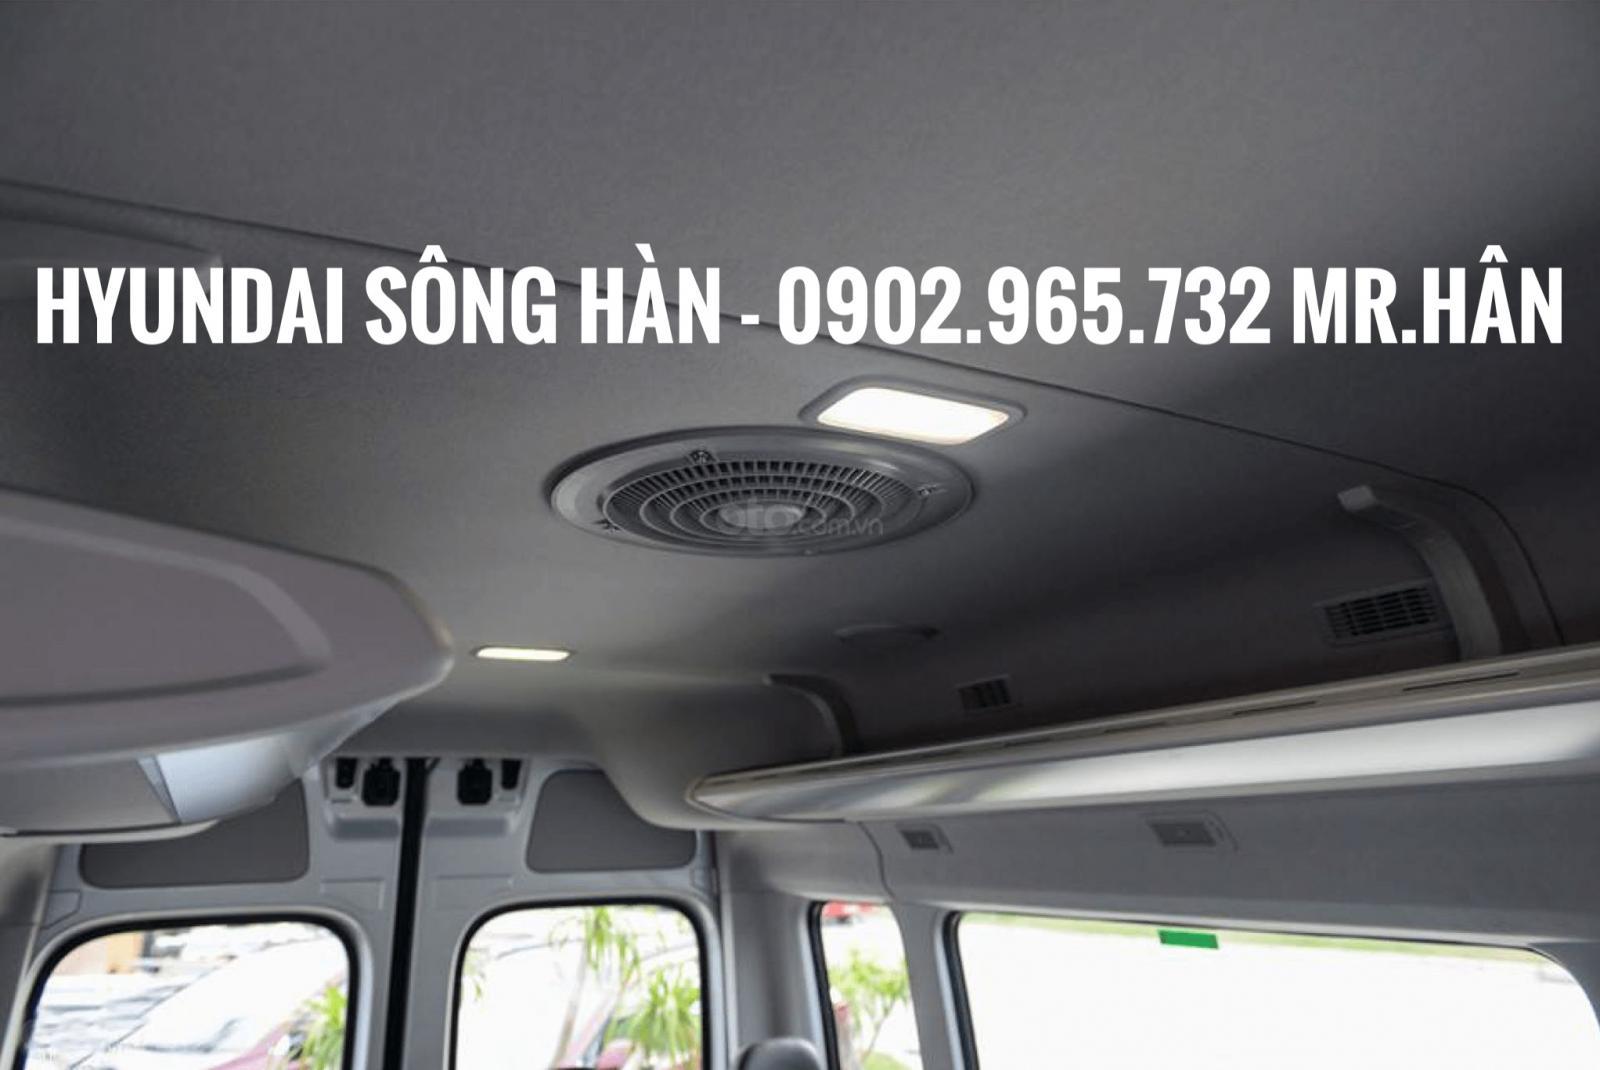 Bán Hyundai Solati 2019 tại Đà Nẵng, liên hệ: Mr. Hân 0902 965 732-9